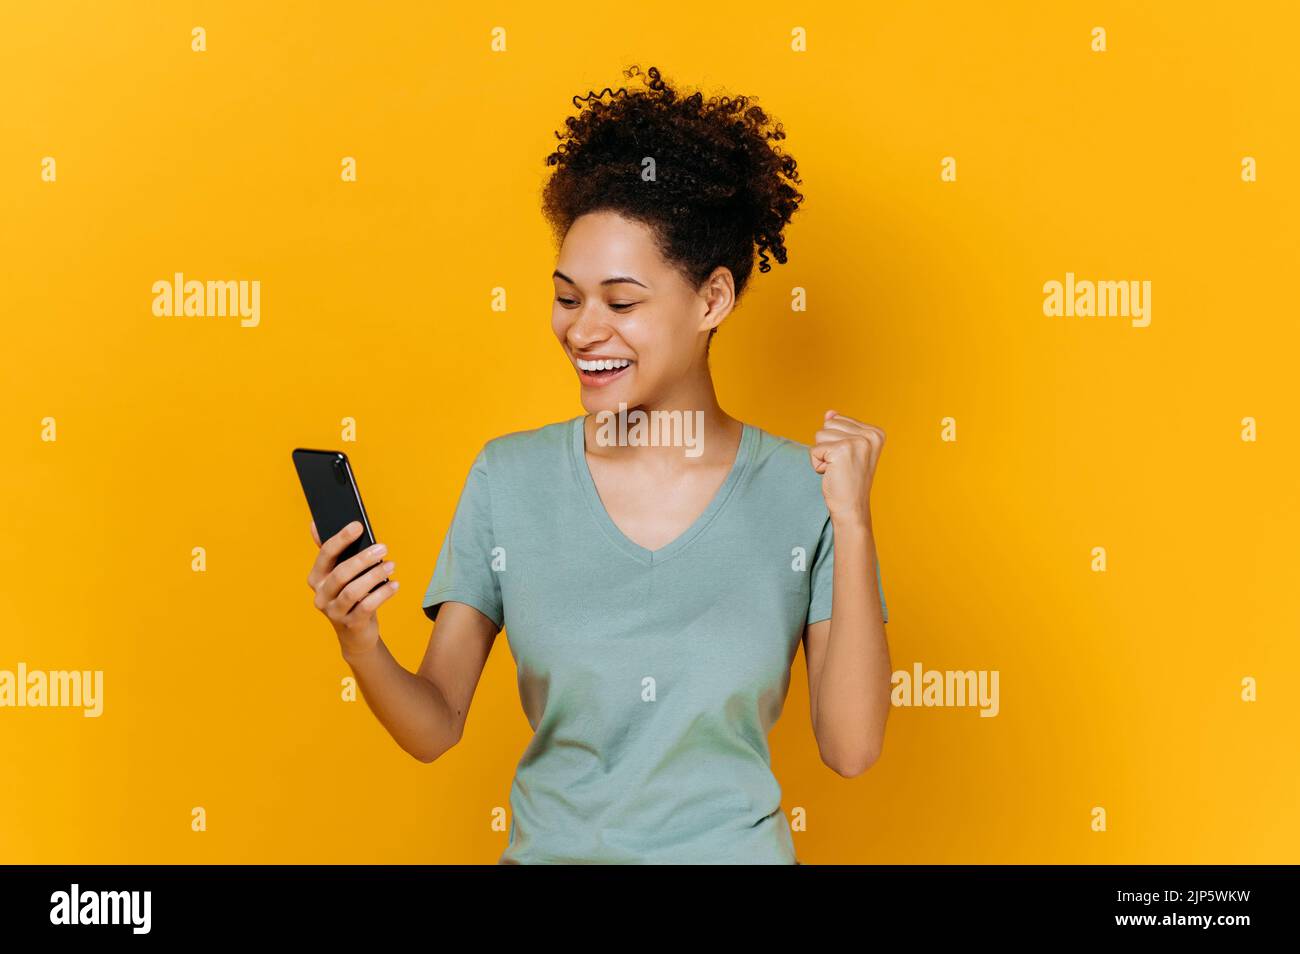 Sieg, Sieg. Erstaunt fröhlich afroamerikanischen Mädchen hält Smartphone, erhalten unerwartete Nachrichten, gewinnen Lotterie, steht auf isolierten orangefarbenen Hintergrund, fröhlichen Gesichtsausdruck, toothy Lächeln, gestikulierenden Faust Stockfoto